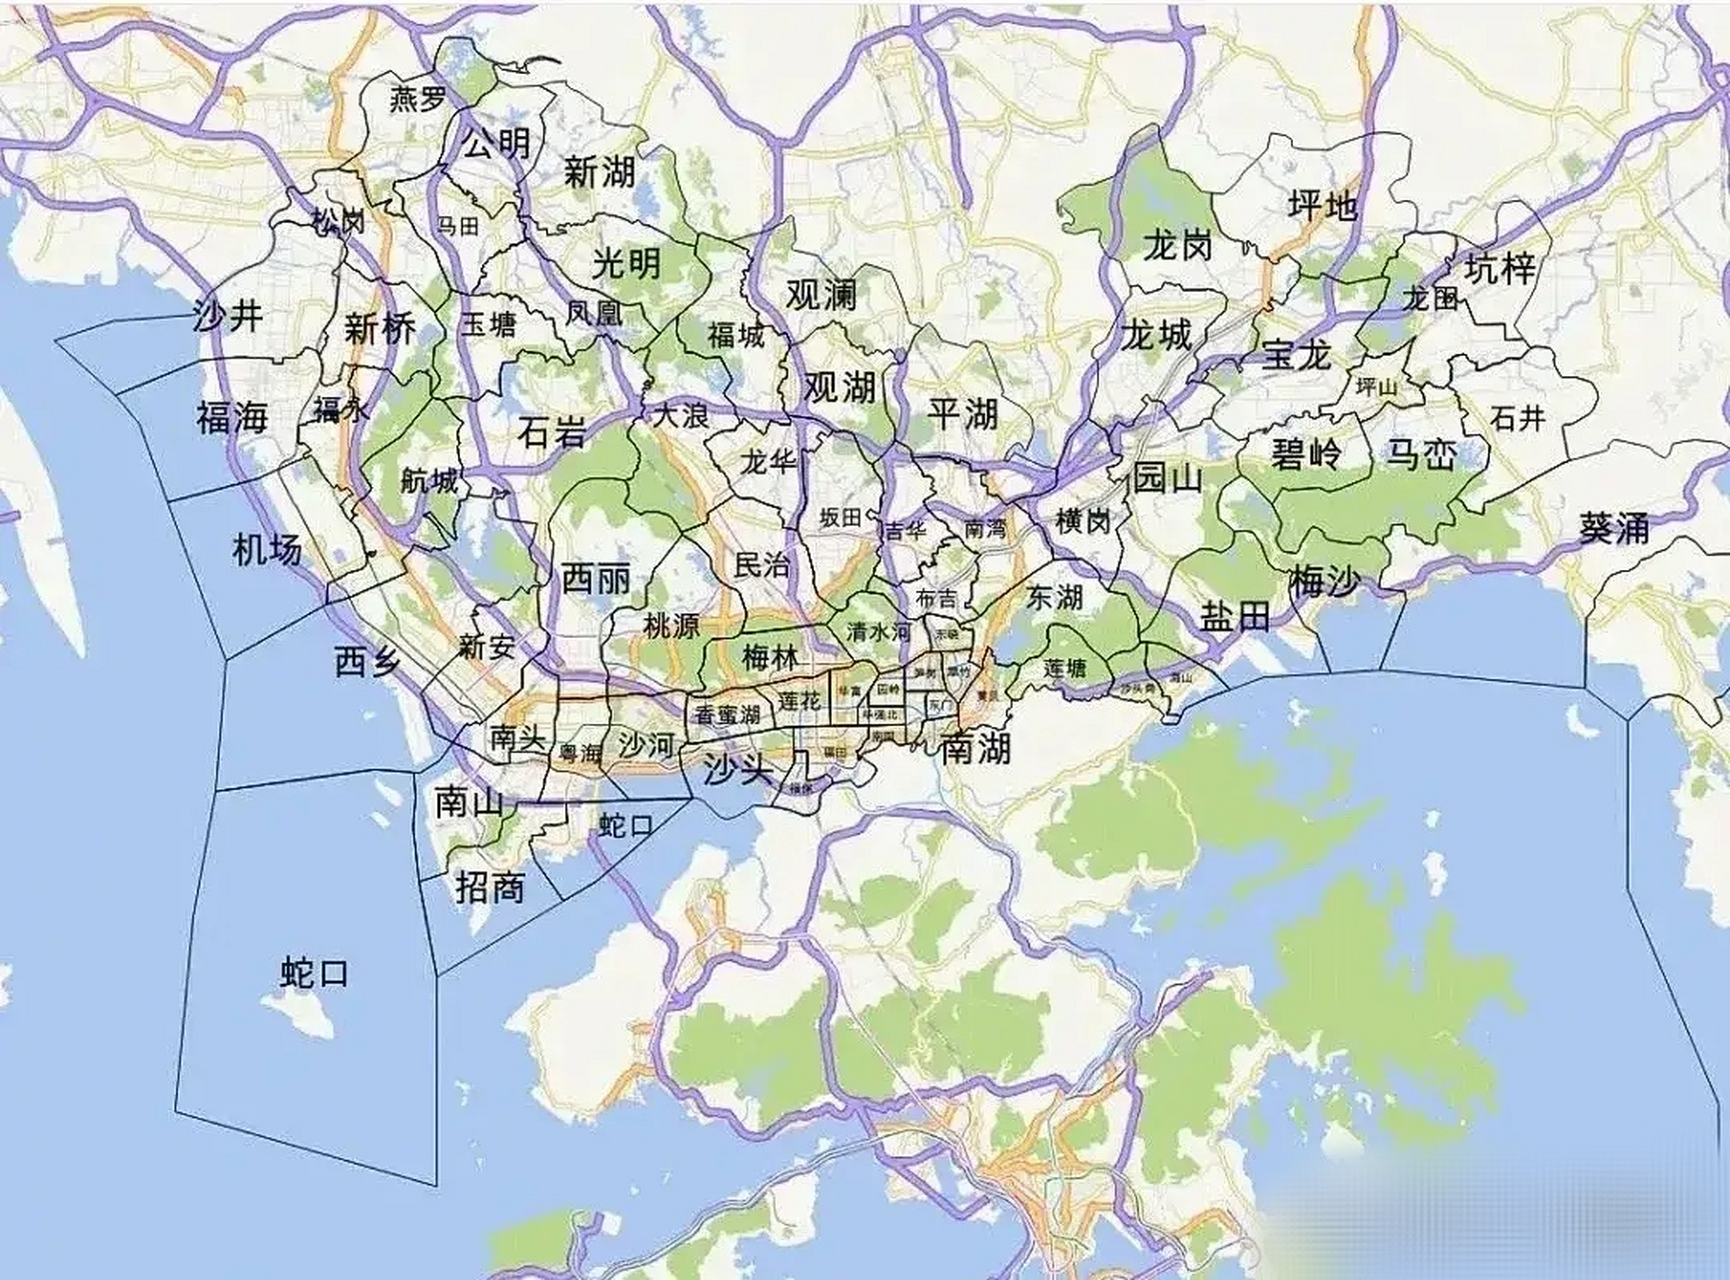 深圳街道划分原来是这样的,深圳目前10个区74个街道,没有镇,高度城市